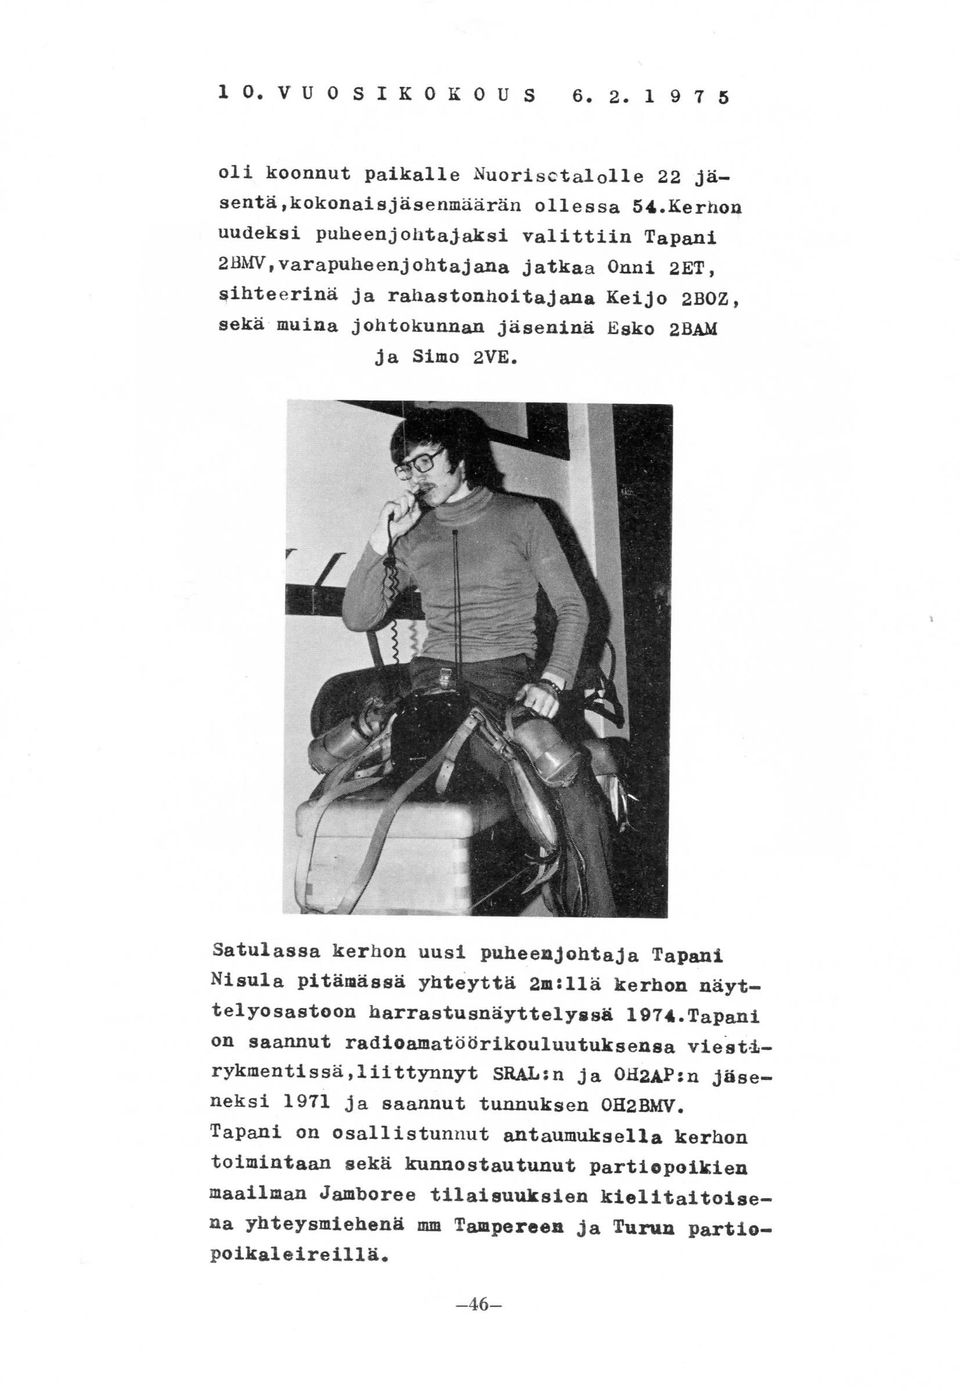 Satulassa kerhon uusi puheenjohtaja Tapani Nisula pitamassa yhteytta 2m:11a kerhon nayttelyosastoon harrastusnayttelyssfi 1974.